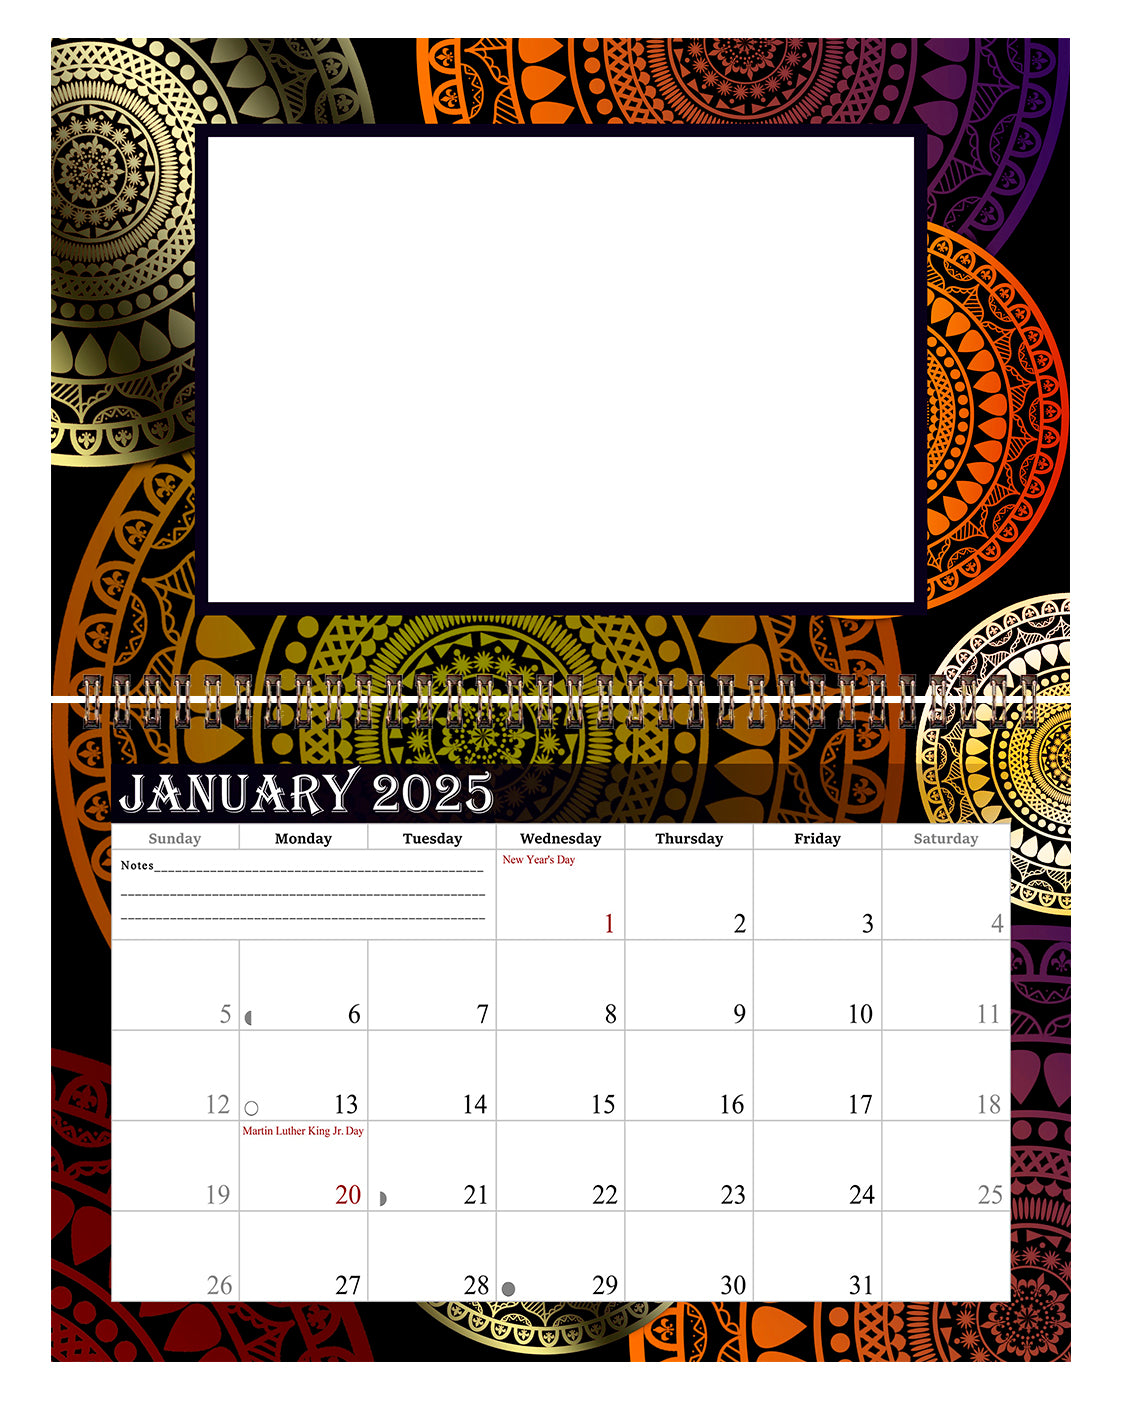 2025 Photo Frame Wall Spiral-bound Calendar (Add Your Own Photos) - 12 Months Desktop/Wall Calendar/Planner - (Edition #16)